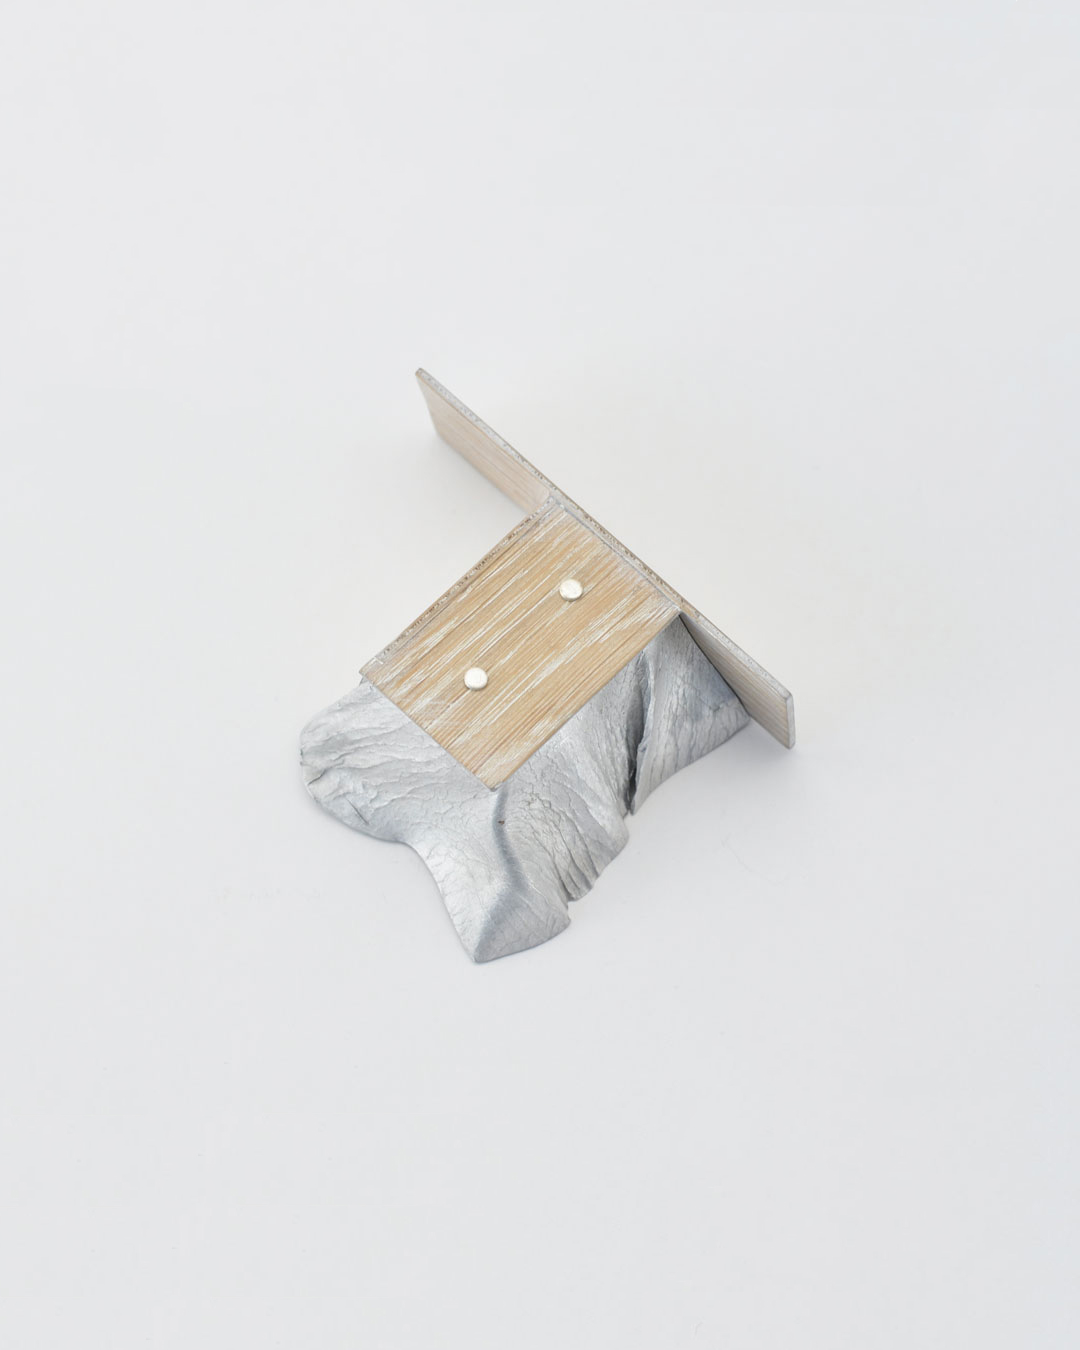 Anders Ljungberg, Declaration #4, 2019, broche; aluminium, gelamineerd eikenhout, staal, 95 x 70 x 35 mm, €920